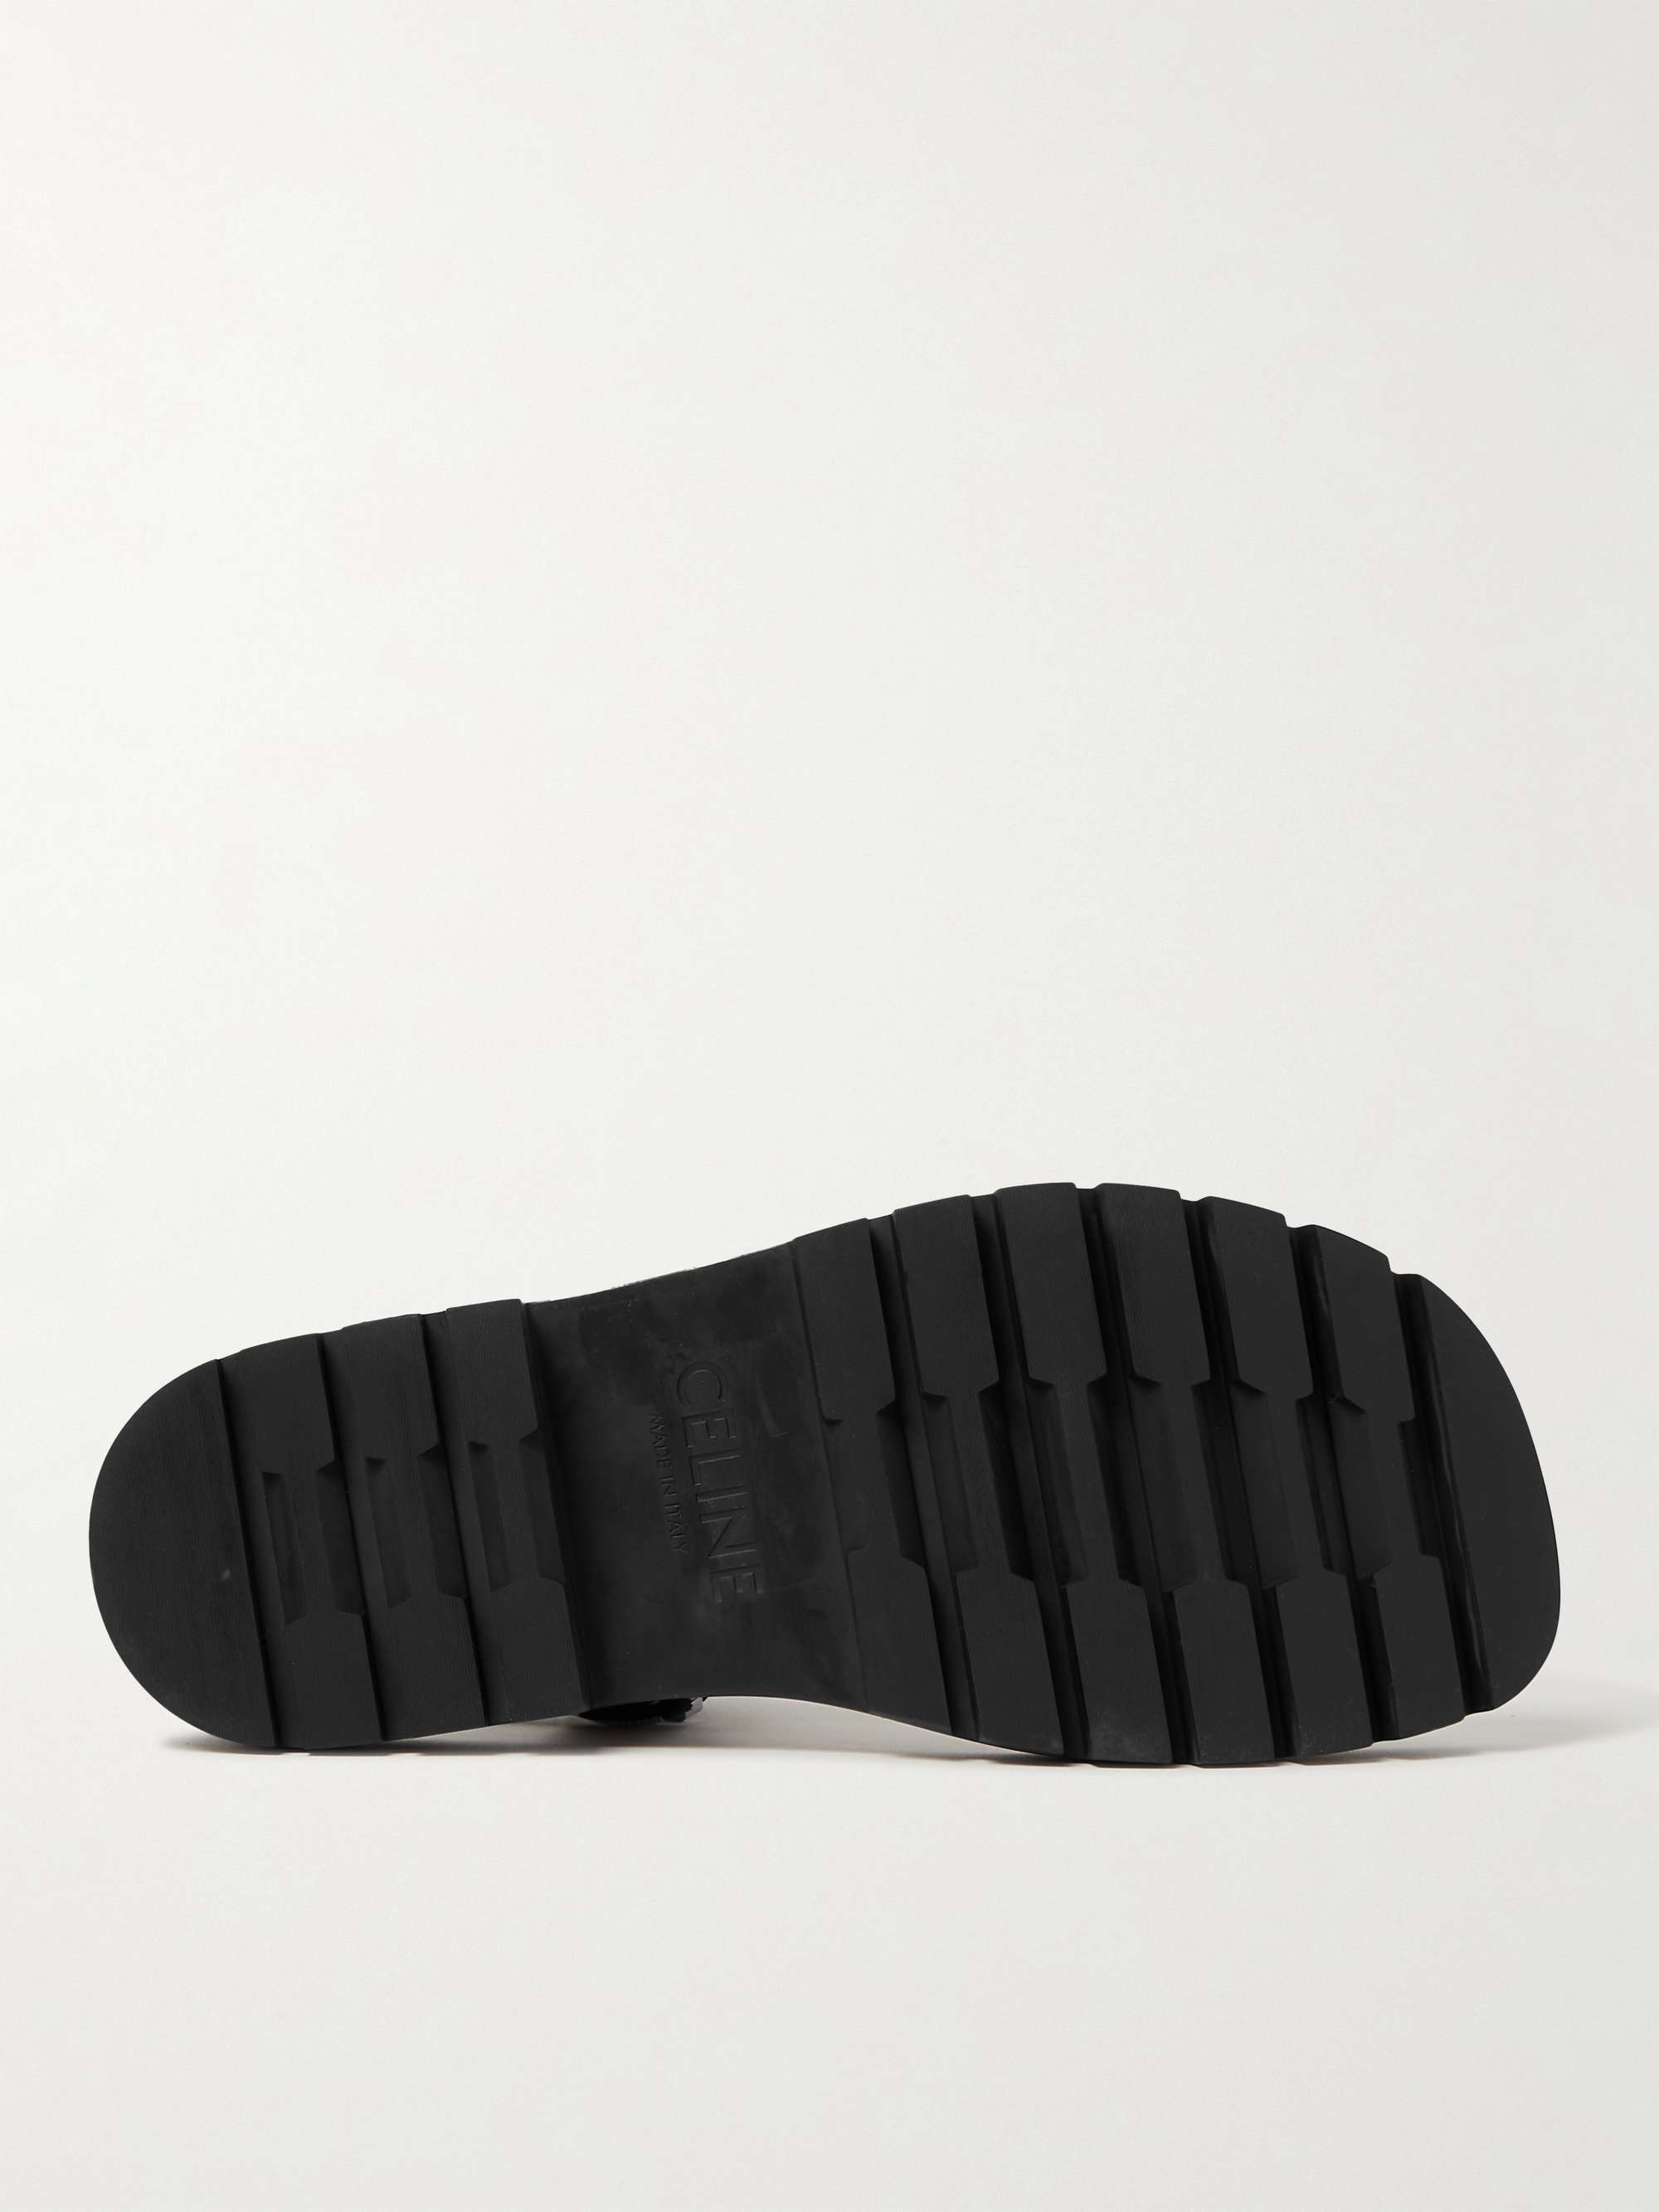 CELINE HOMME Logo-Print Canvas Sandals